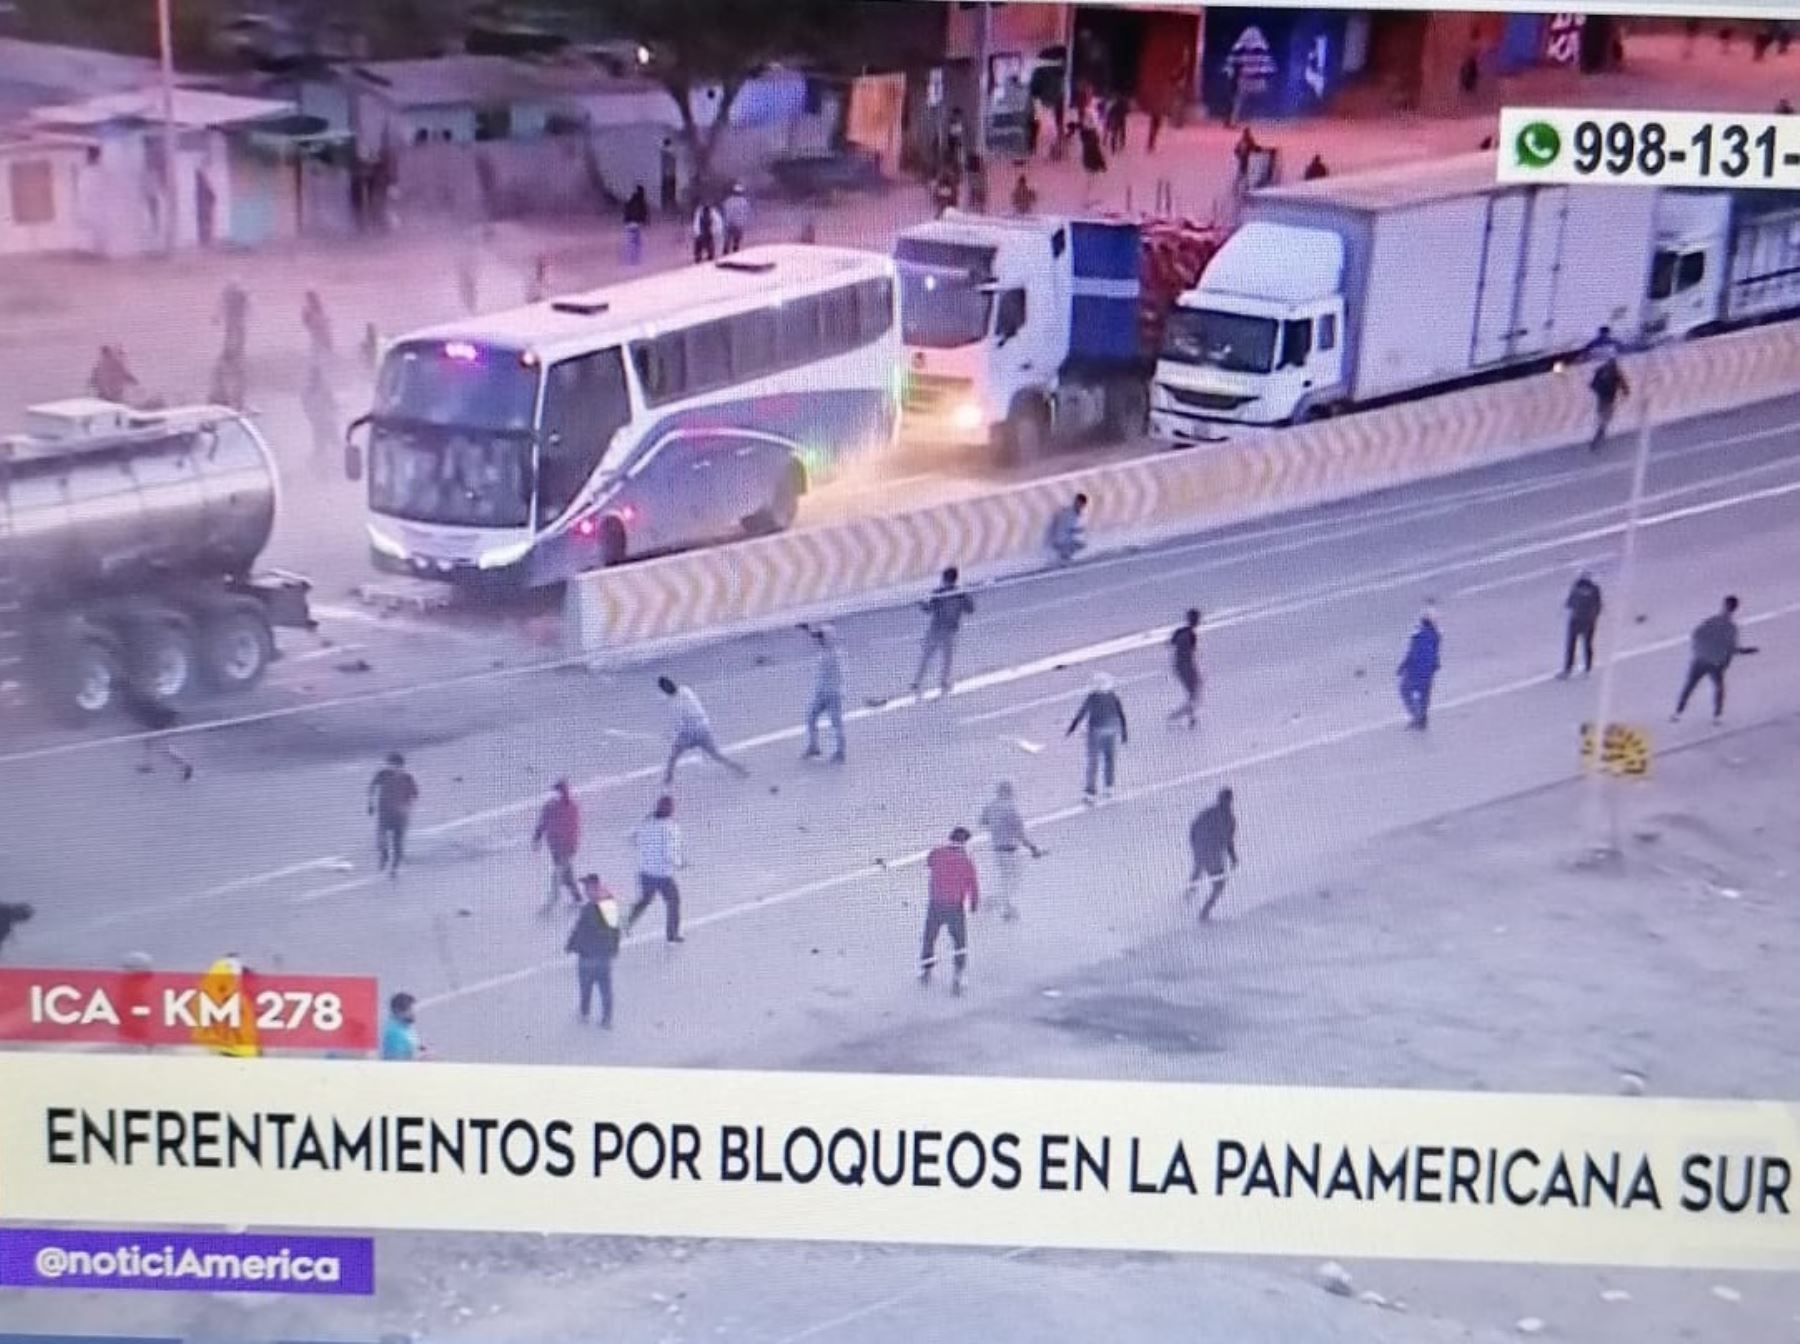 Manifestantes violentos atacaron con piedras un bus interprovincial en la Panamericana Sur, región Ica.